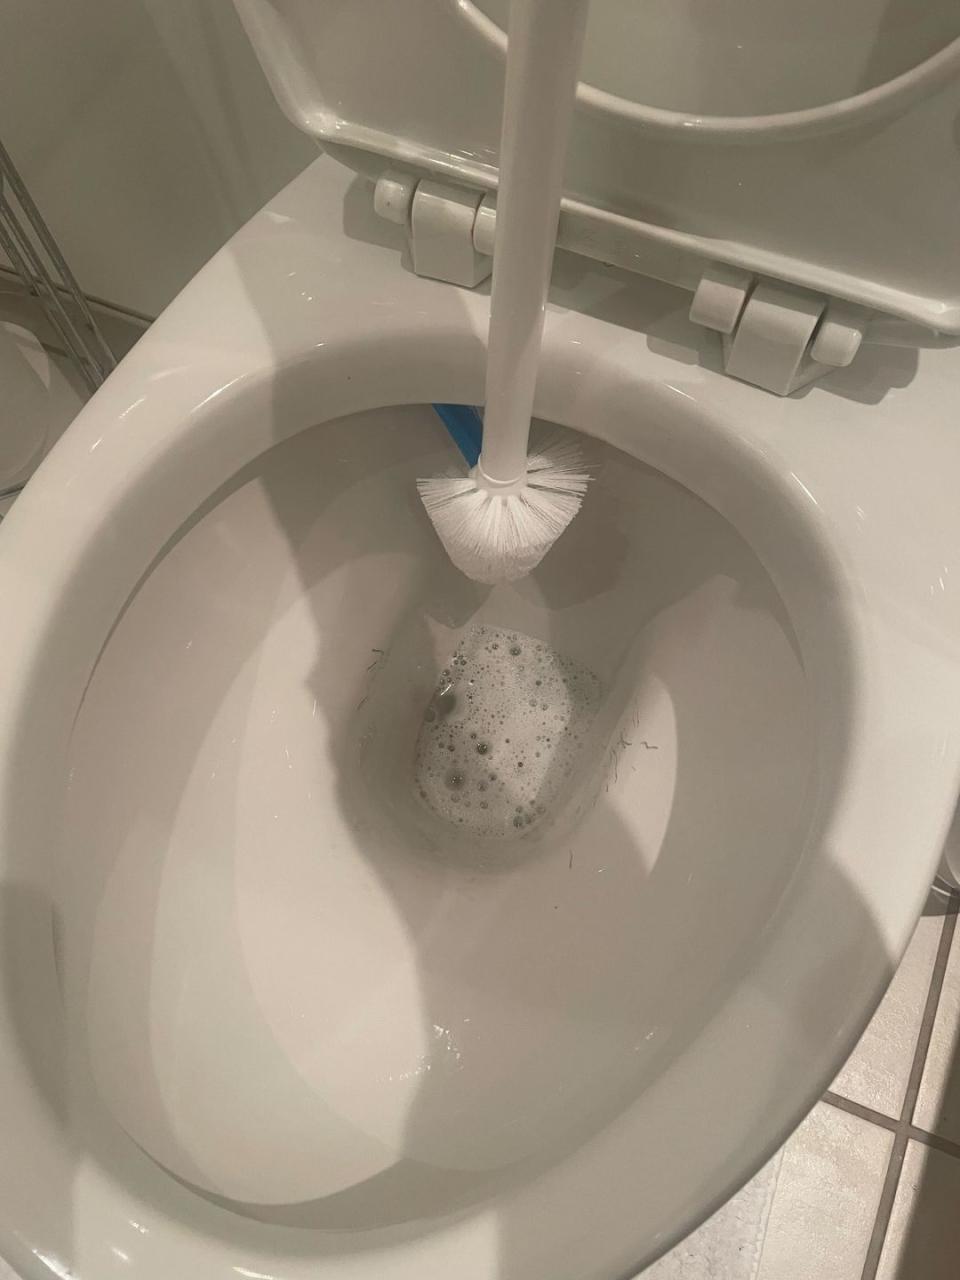 oxo good grips toilet brush